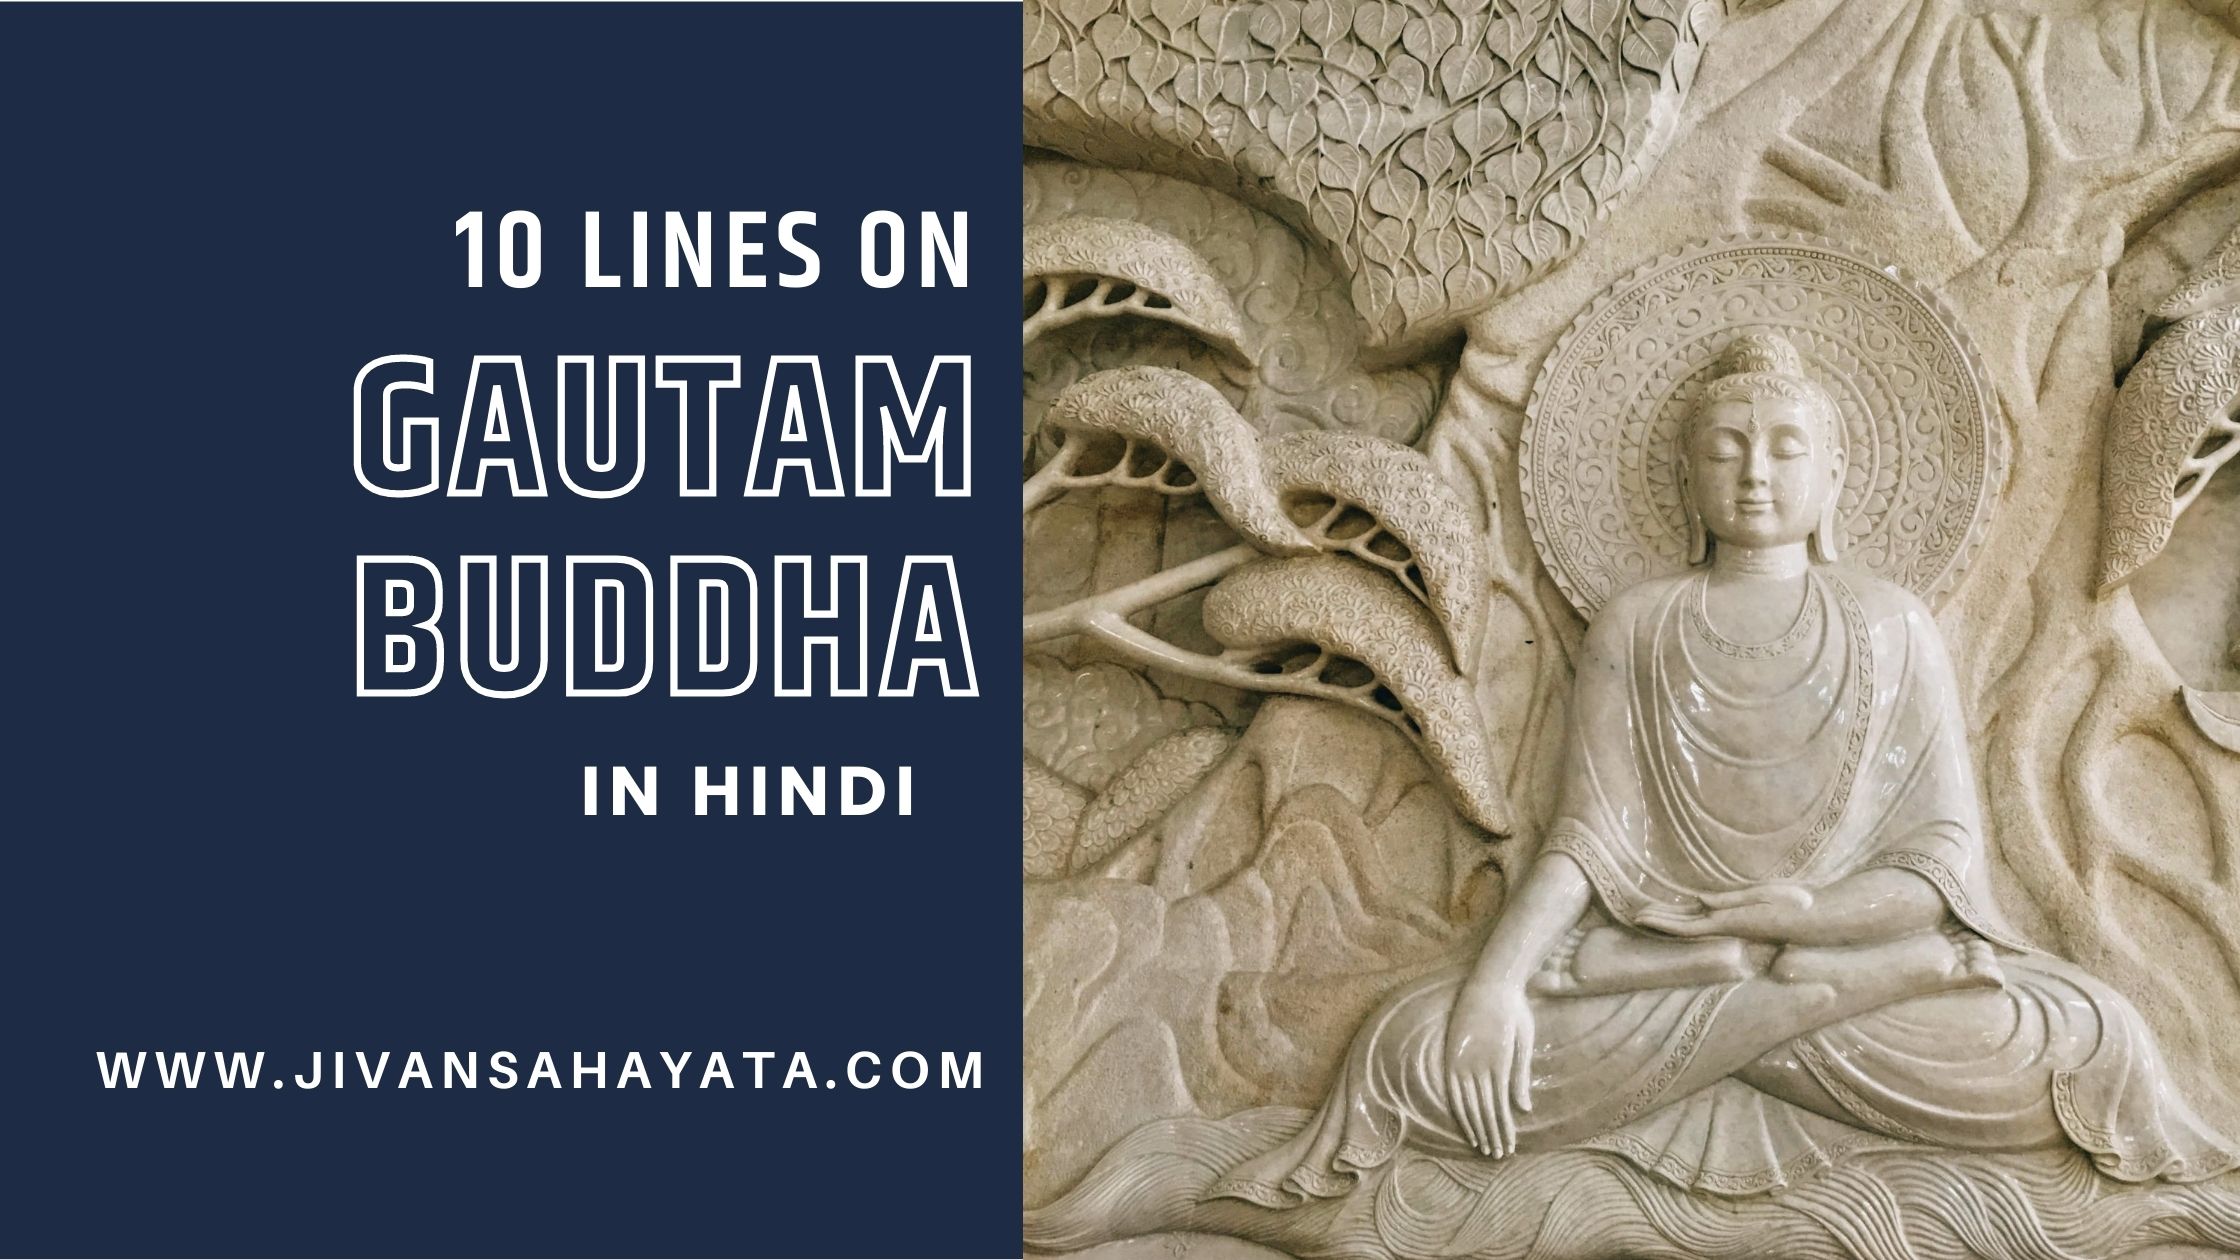 10 lines on Gautam Buddha in Hindi